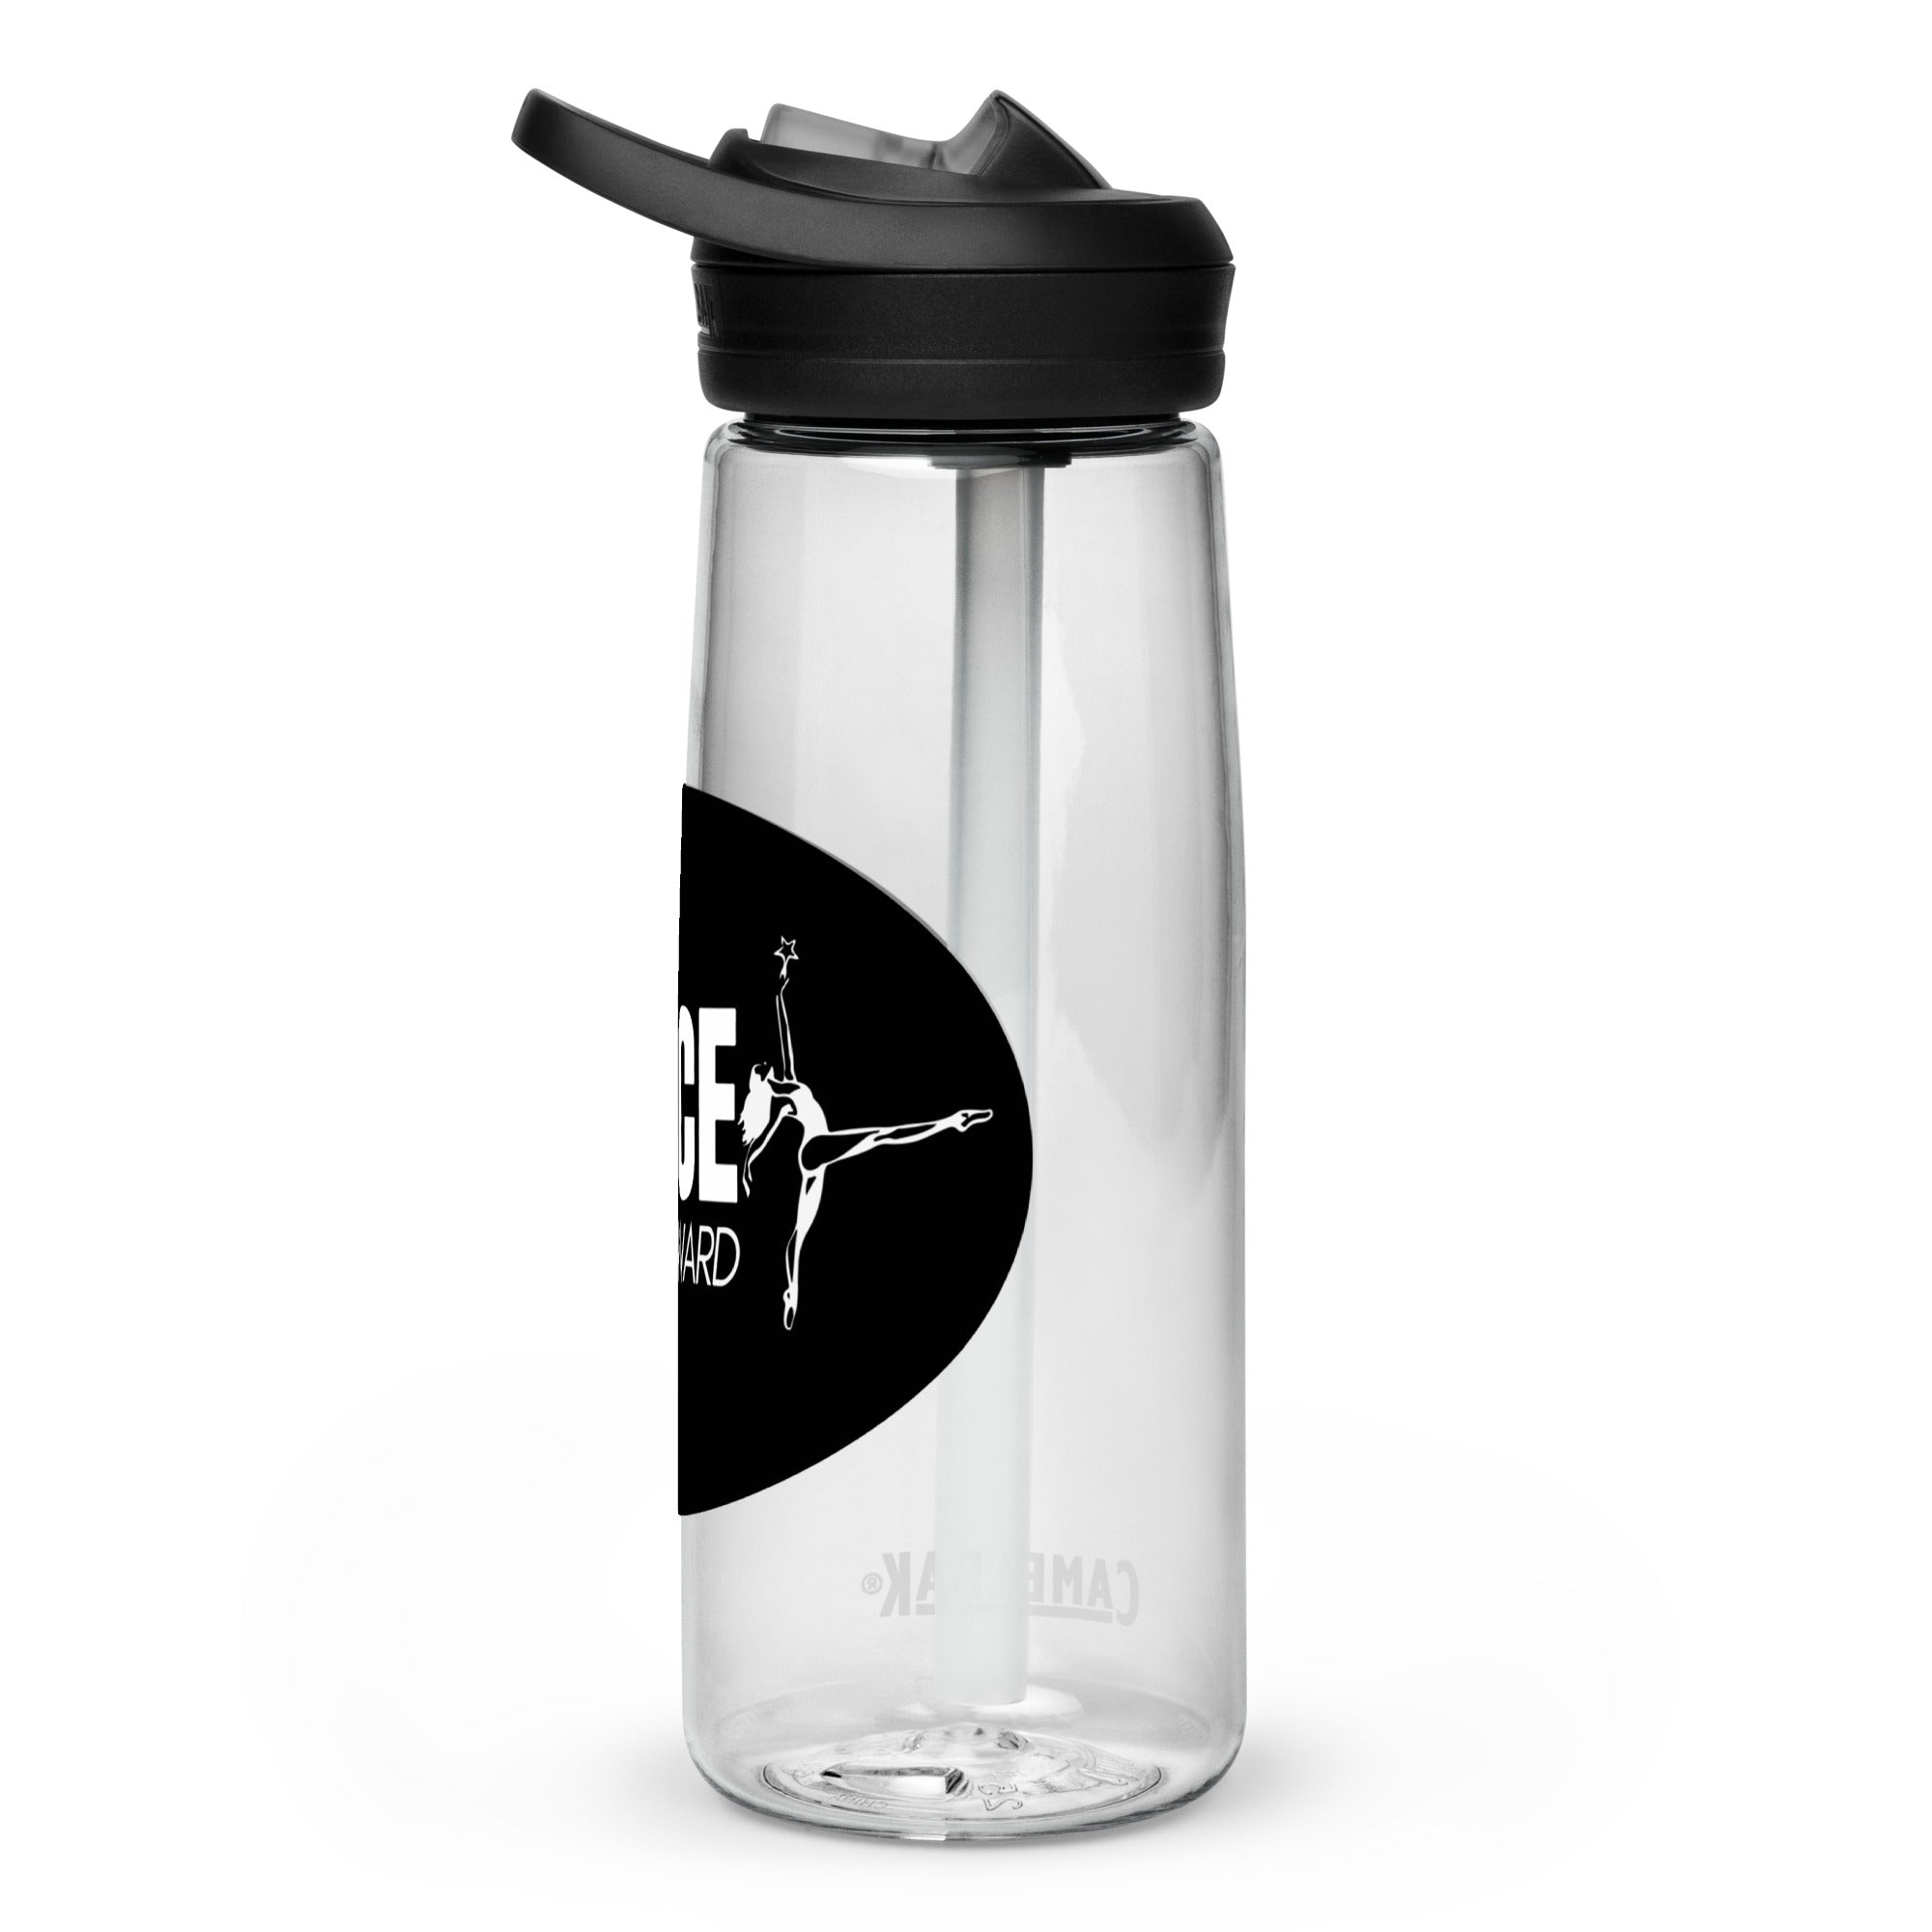 DIF/GYD Sports water bottle